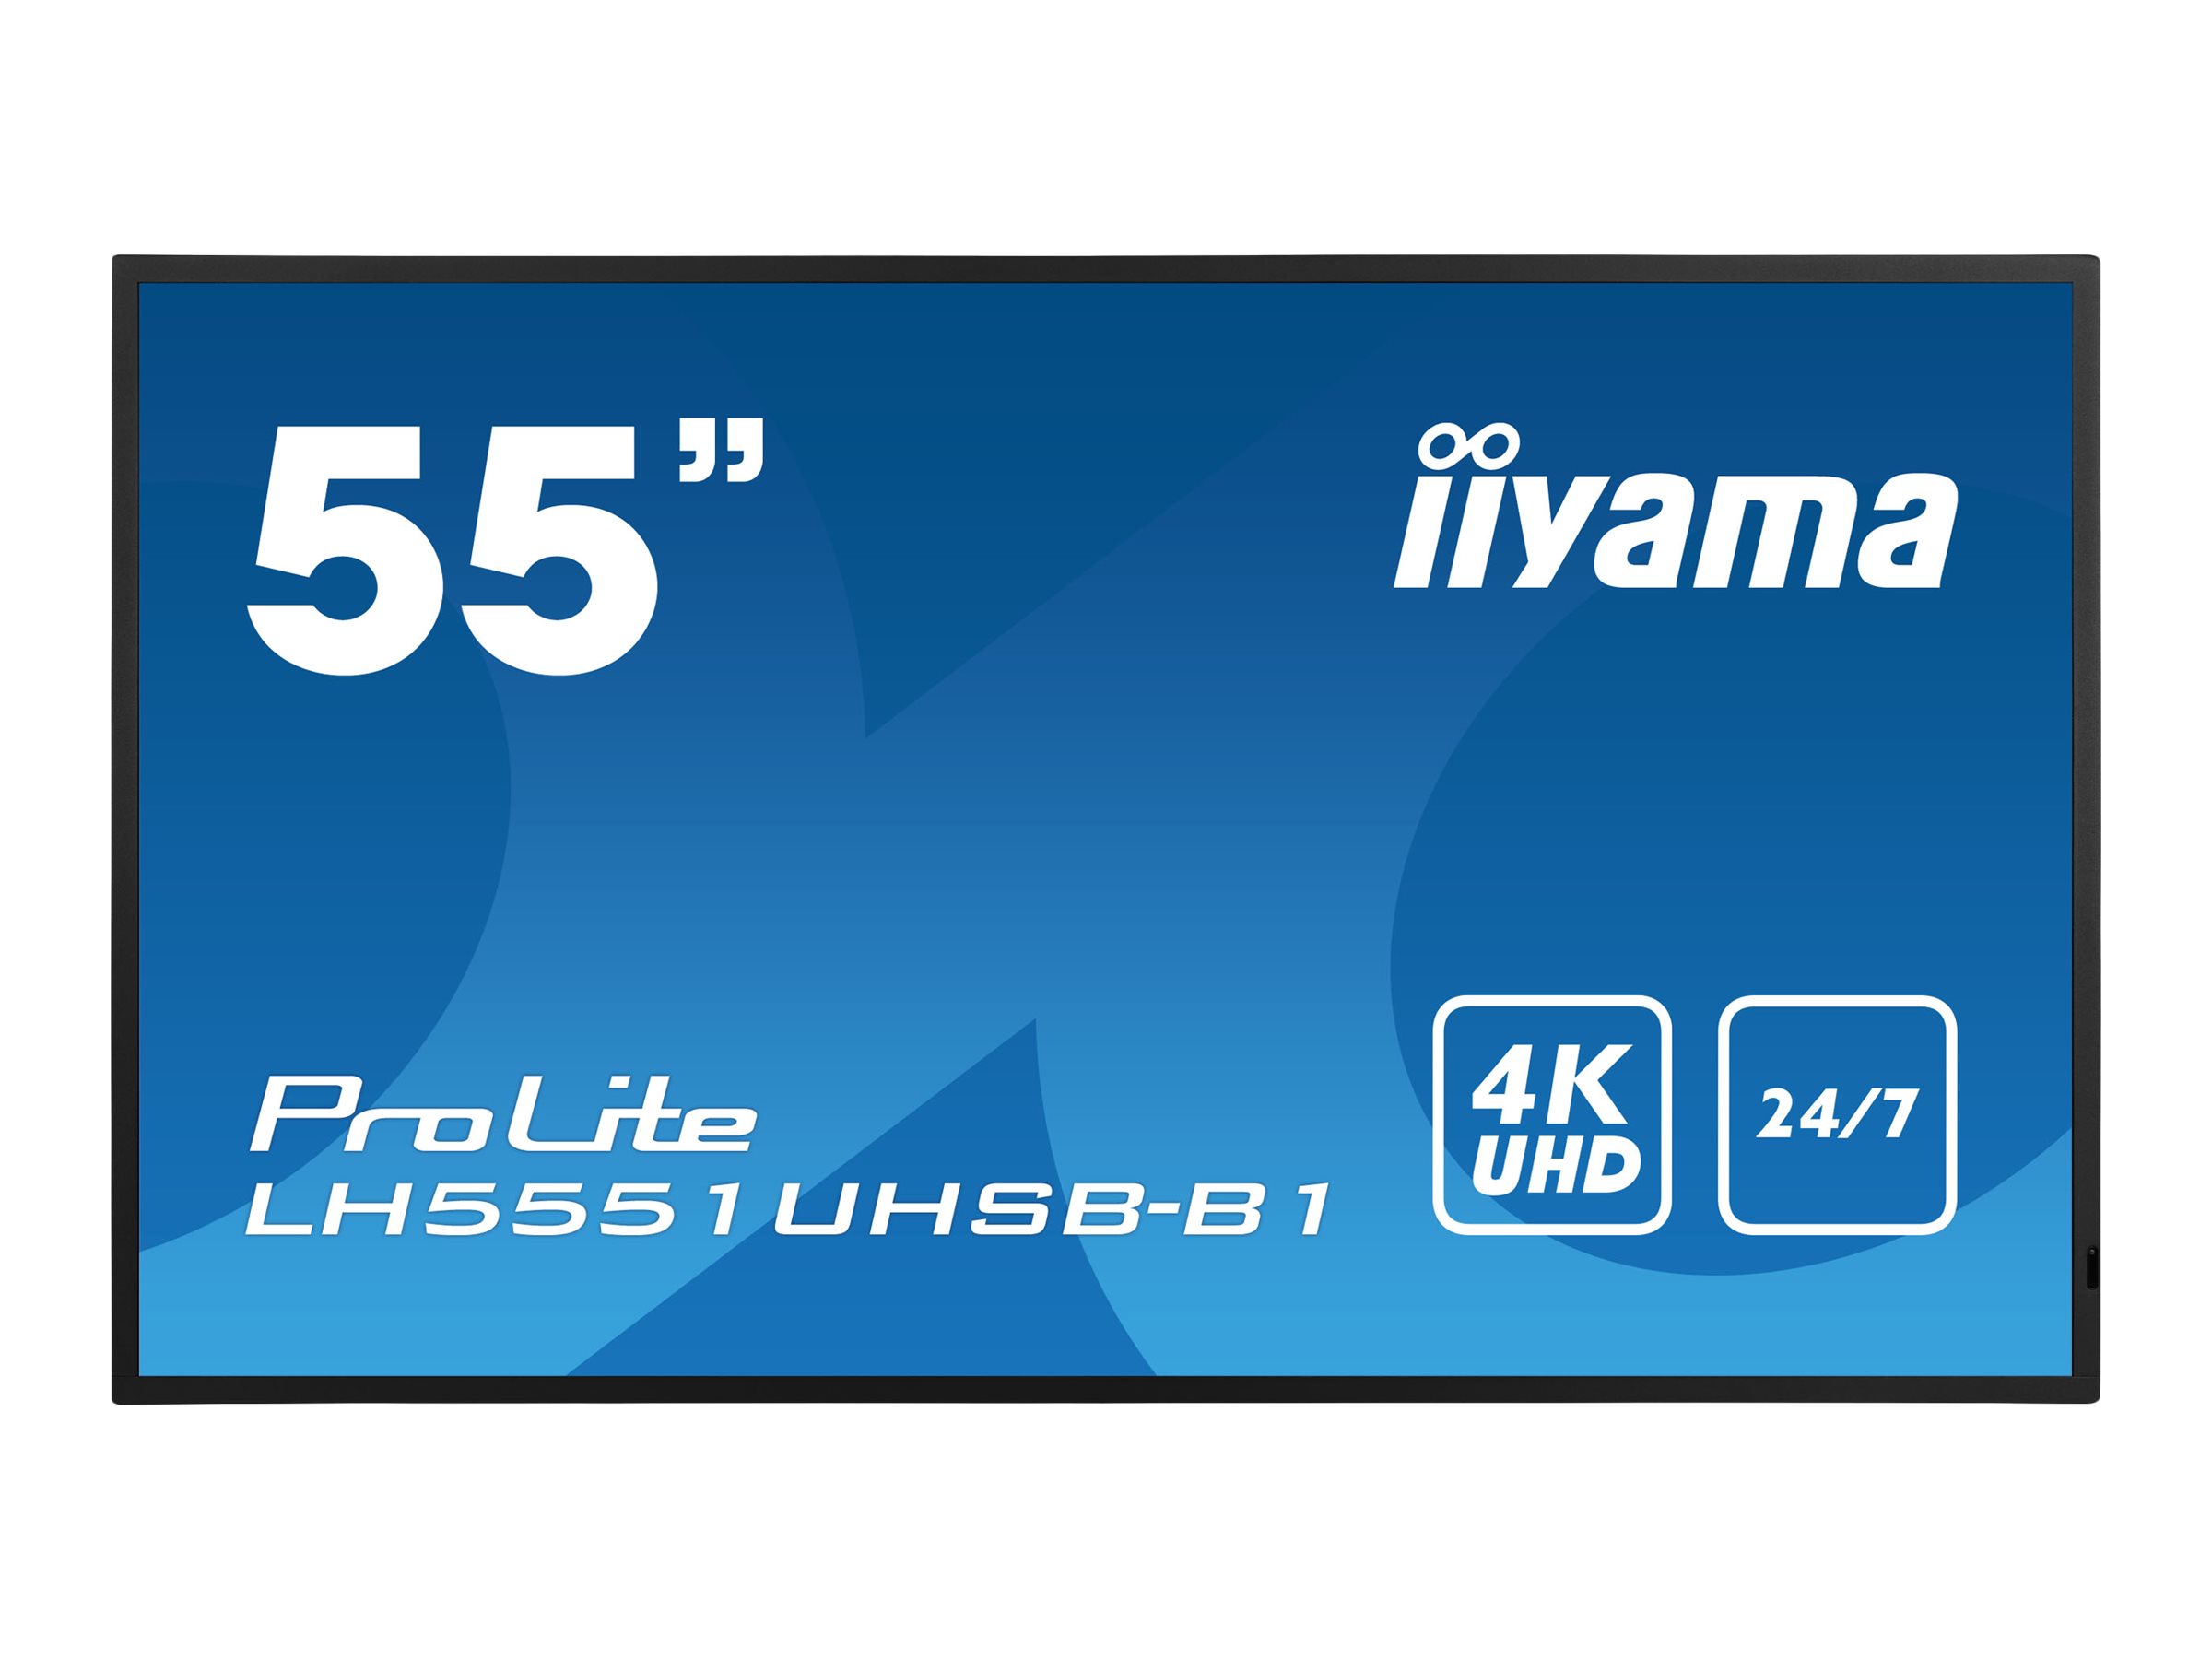 Iiyama DS LH5551UHSB 138.68cm   24/7 55/3840x2160/2xHDMI/2xDP